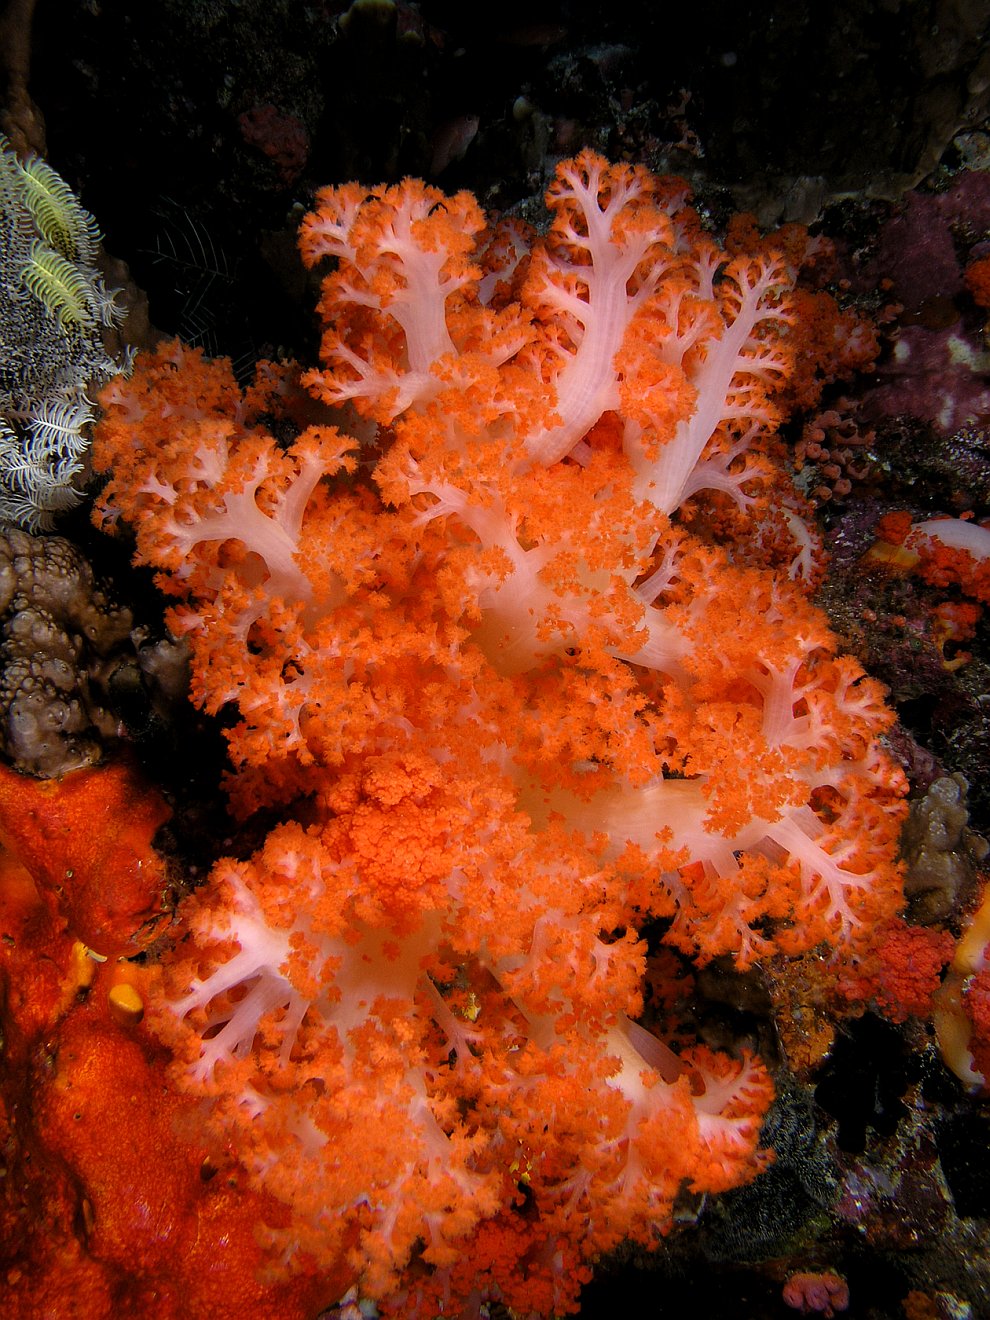 Кораллы - древнейшие существа на Земле кораллы, коралловых, кораллов, рифов, является, Земле, самых, Кораллы, барьерный, черные, более, океанах, которые, морские, кораллы в, могут, красные, наиболее, разновидностей, который